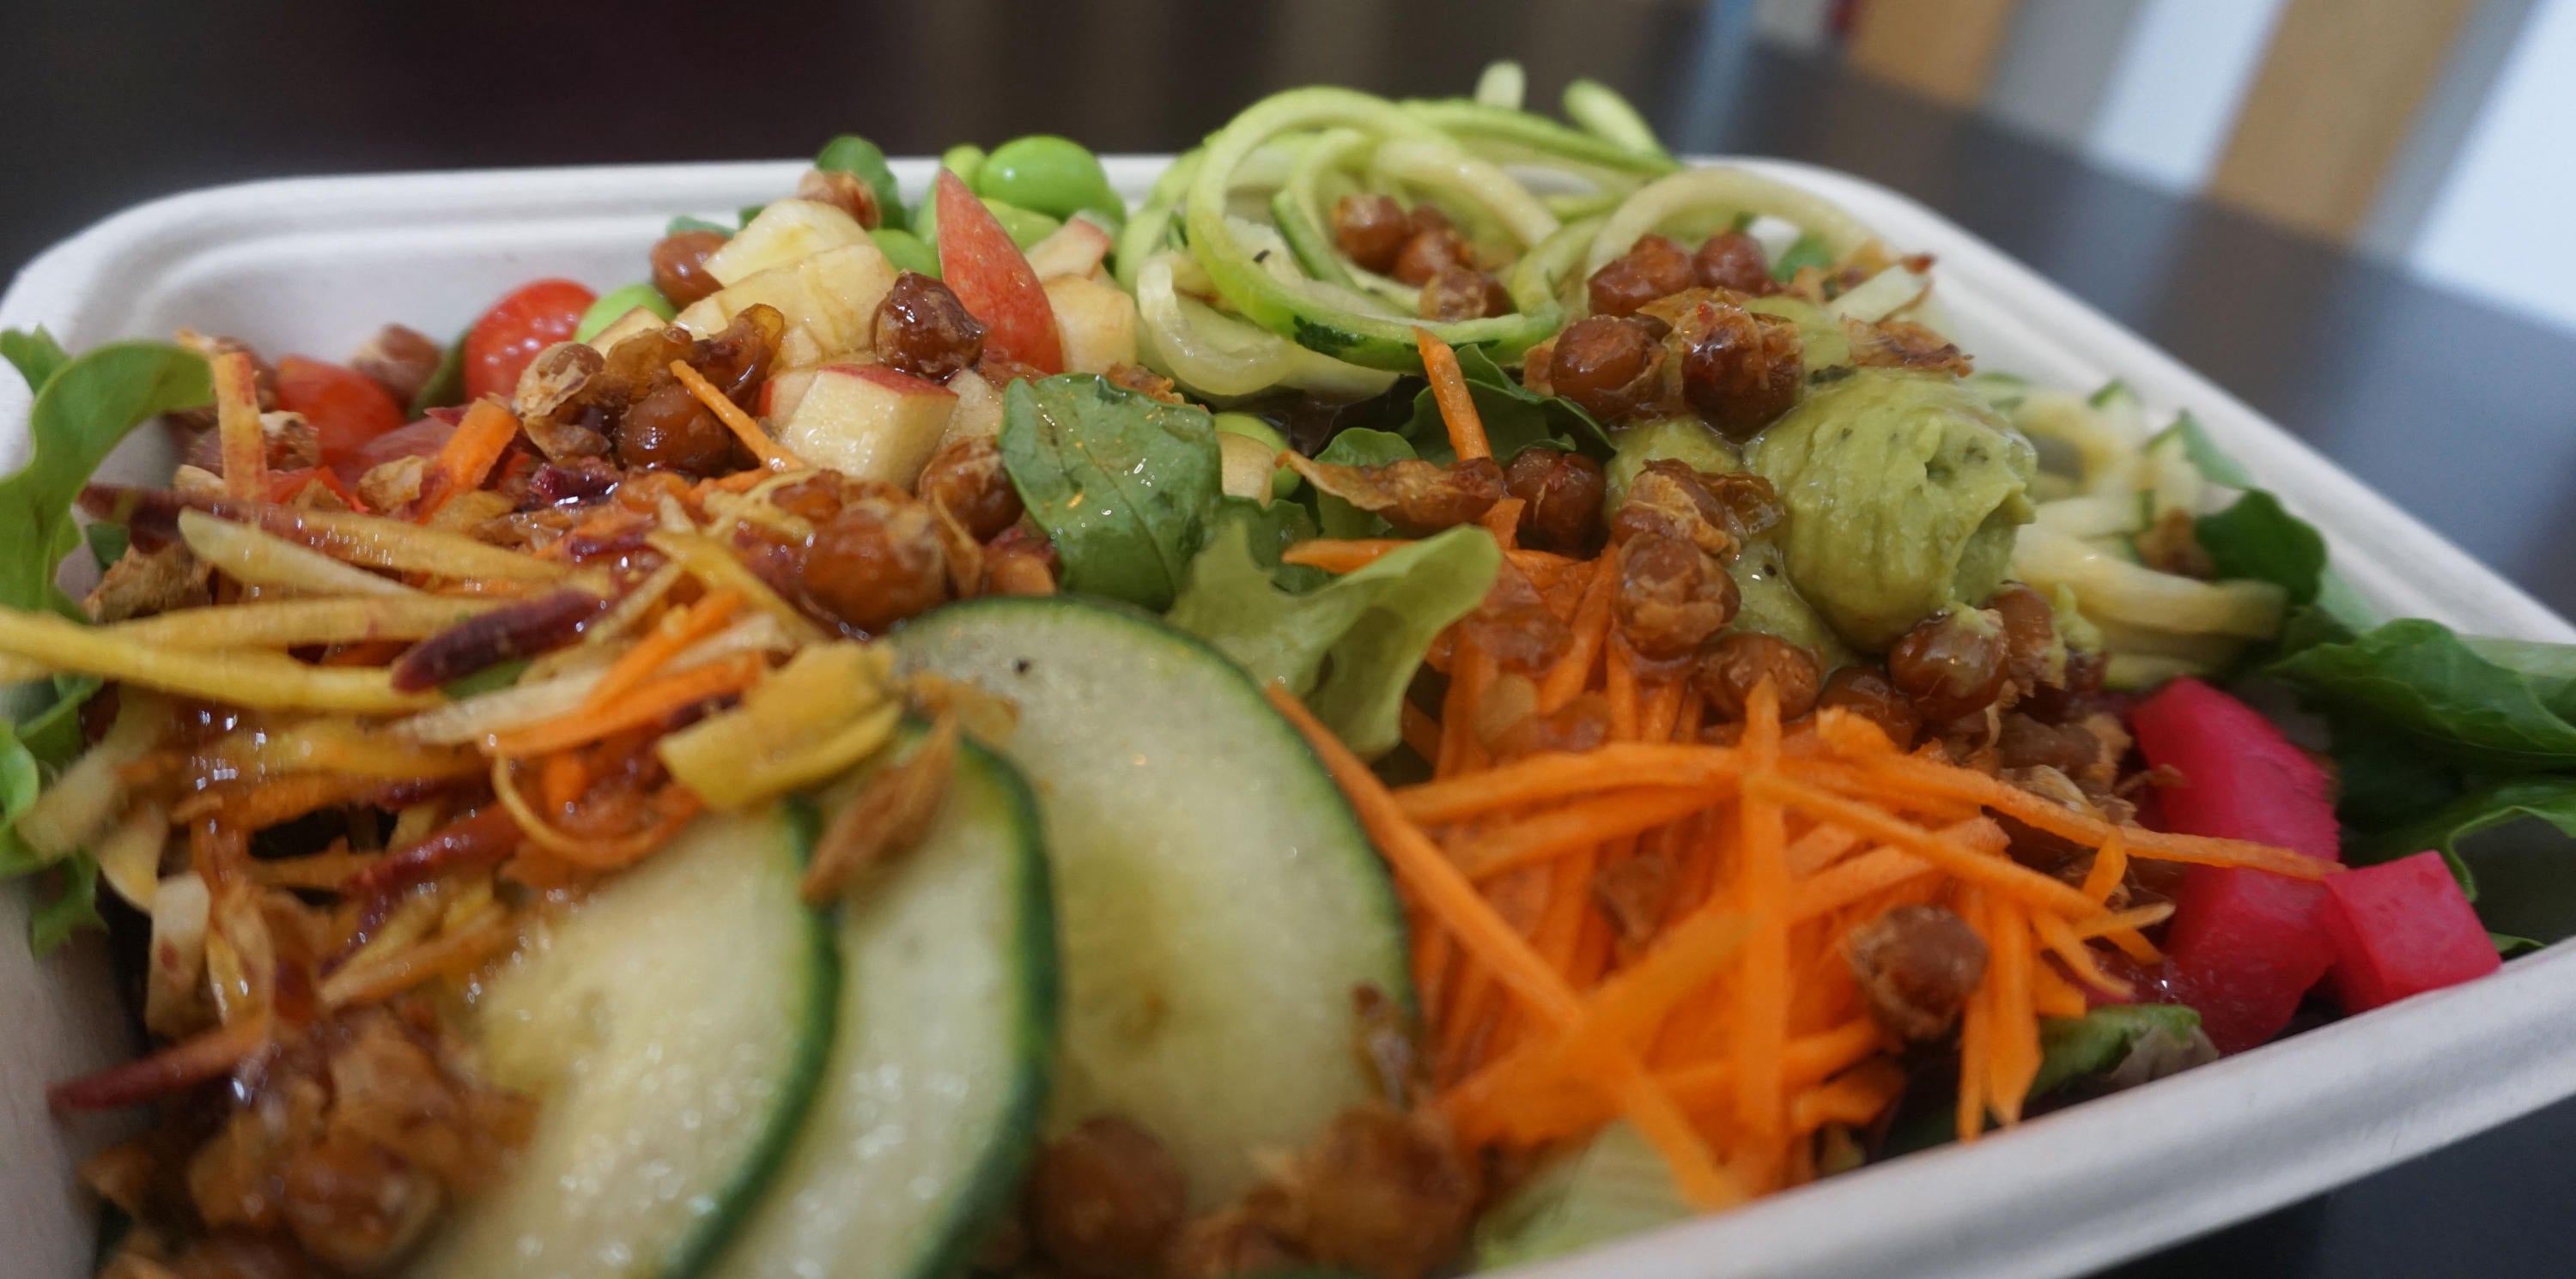 Vegetarian salad bowl at FRSH